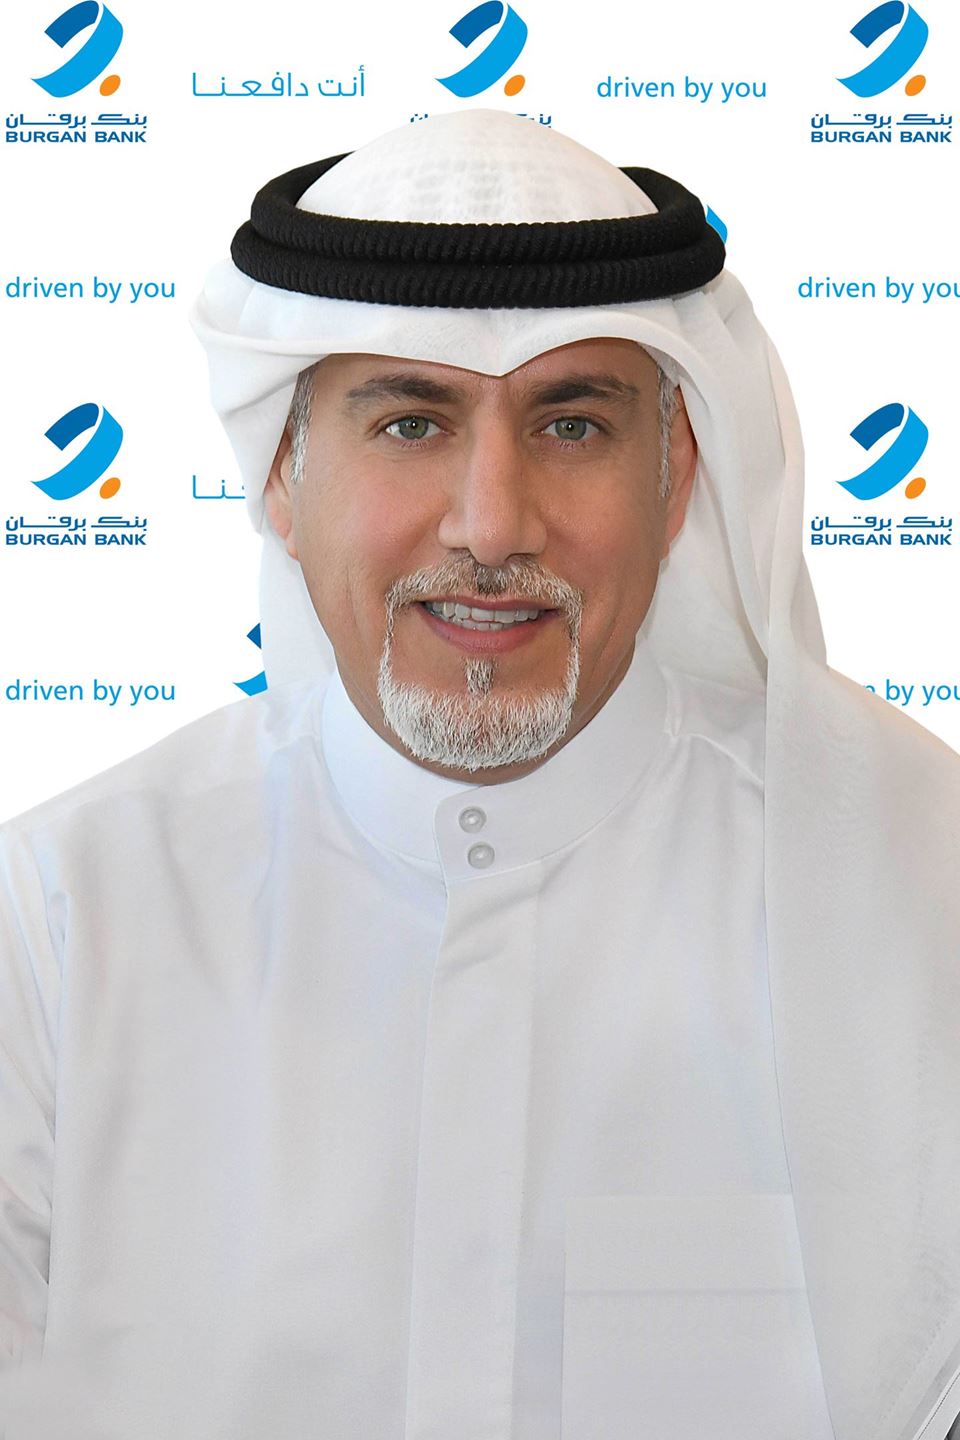 Mr. Naser Mohammed Al Qaisi, Chief Retail Banking Officer at Burgan Bank